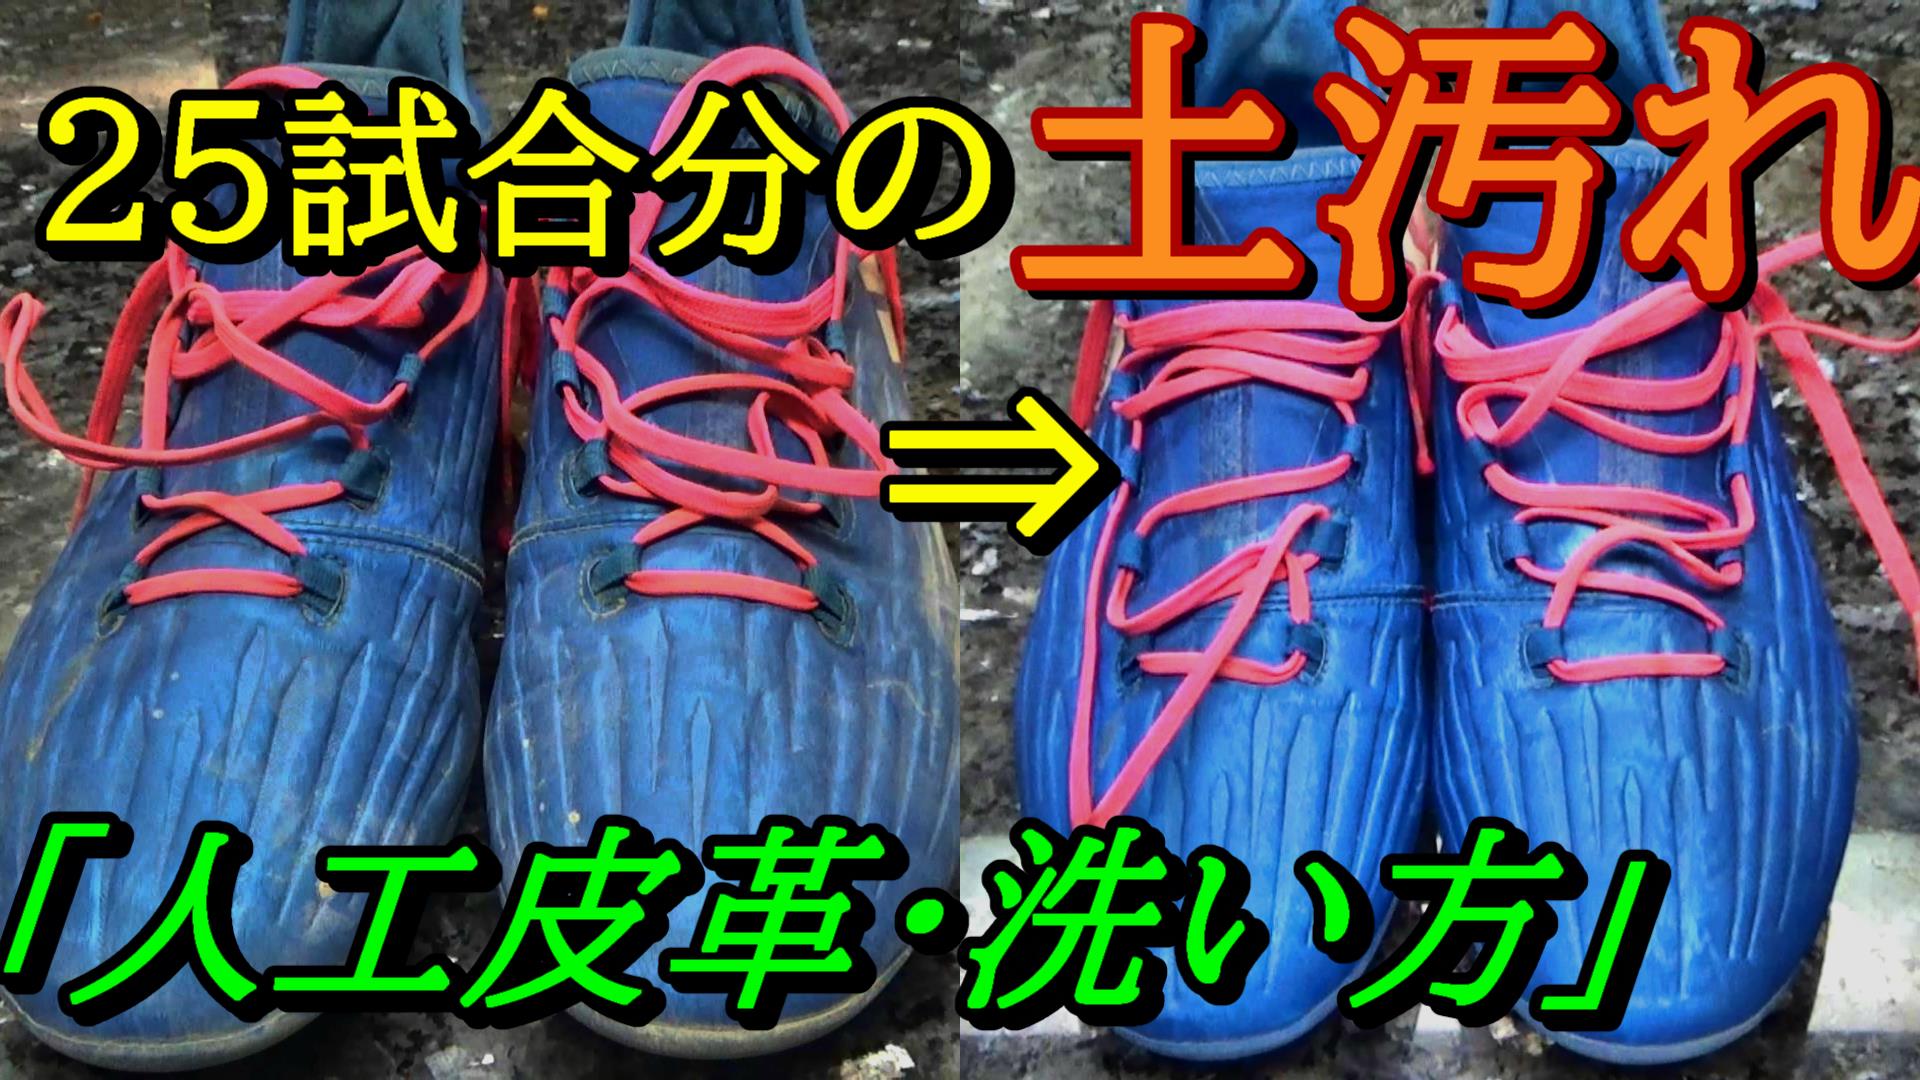 サッカースパイク人工皮革の洗い方 水洗いはok 日本から肥満をなくす こうへい のブログ